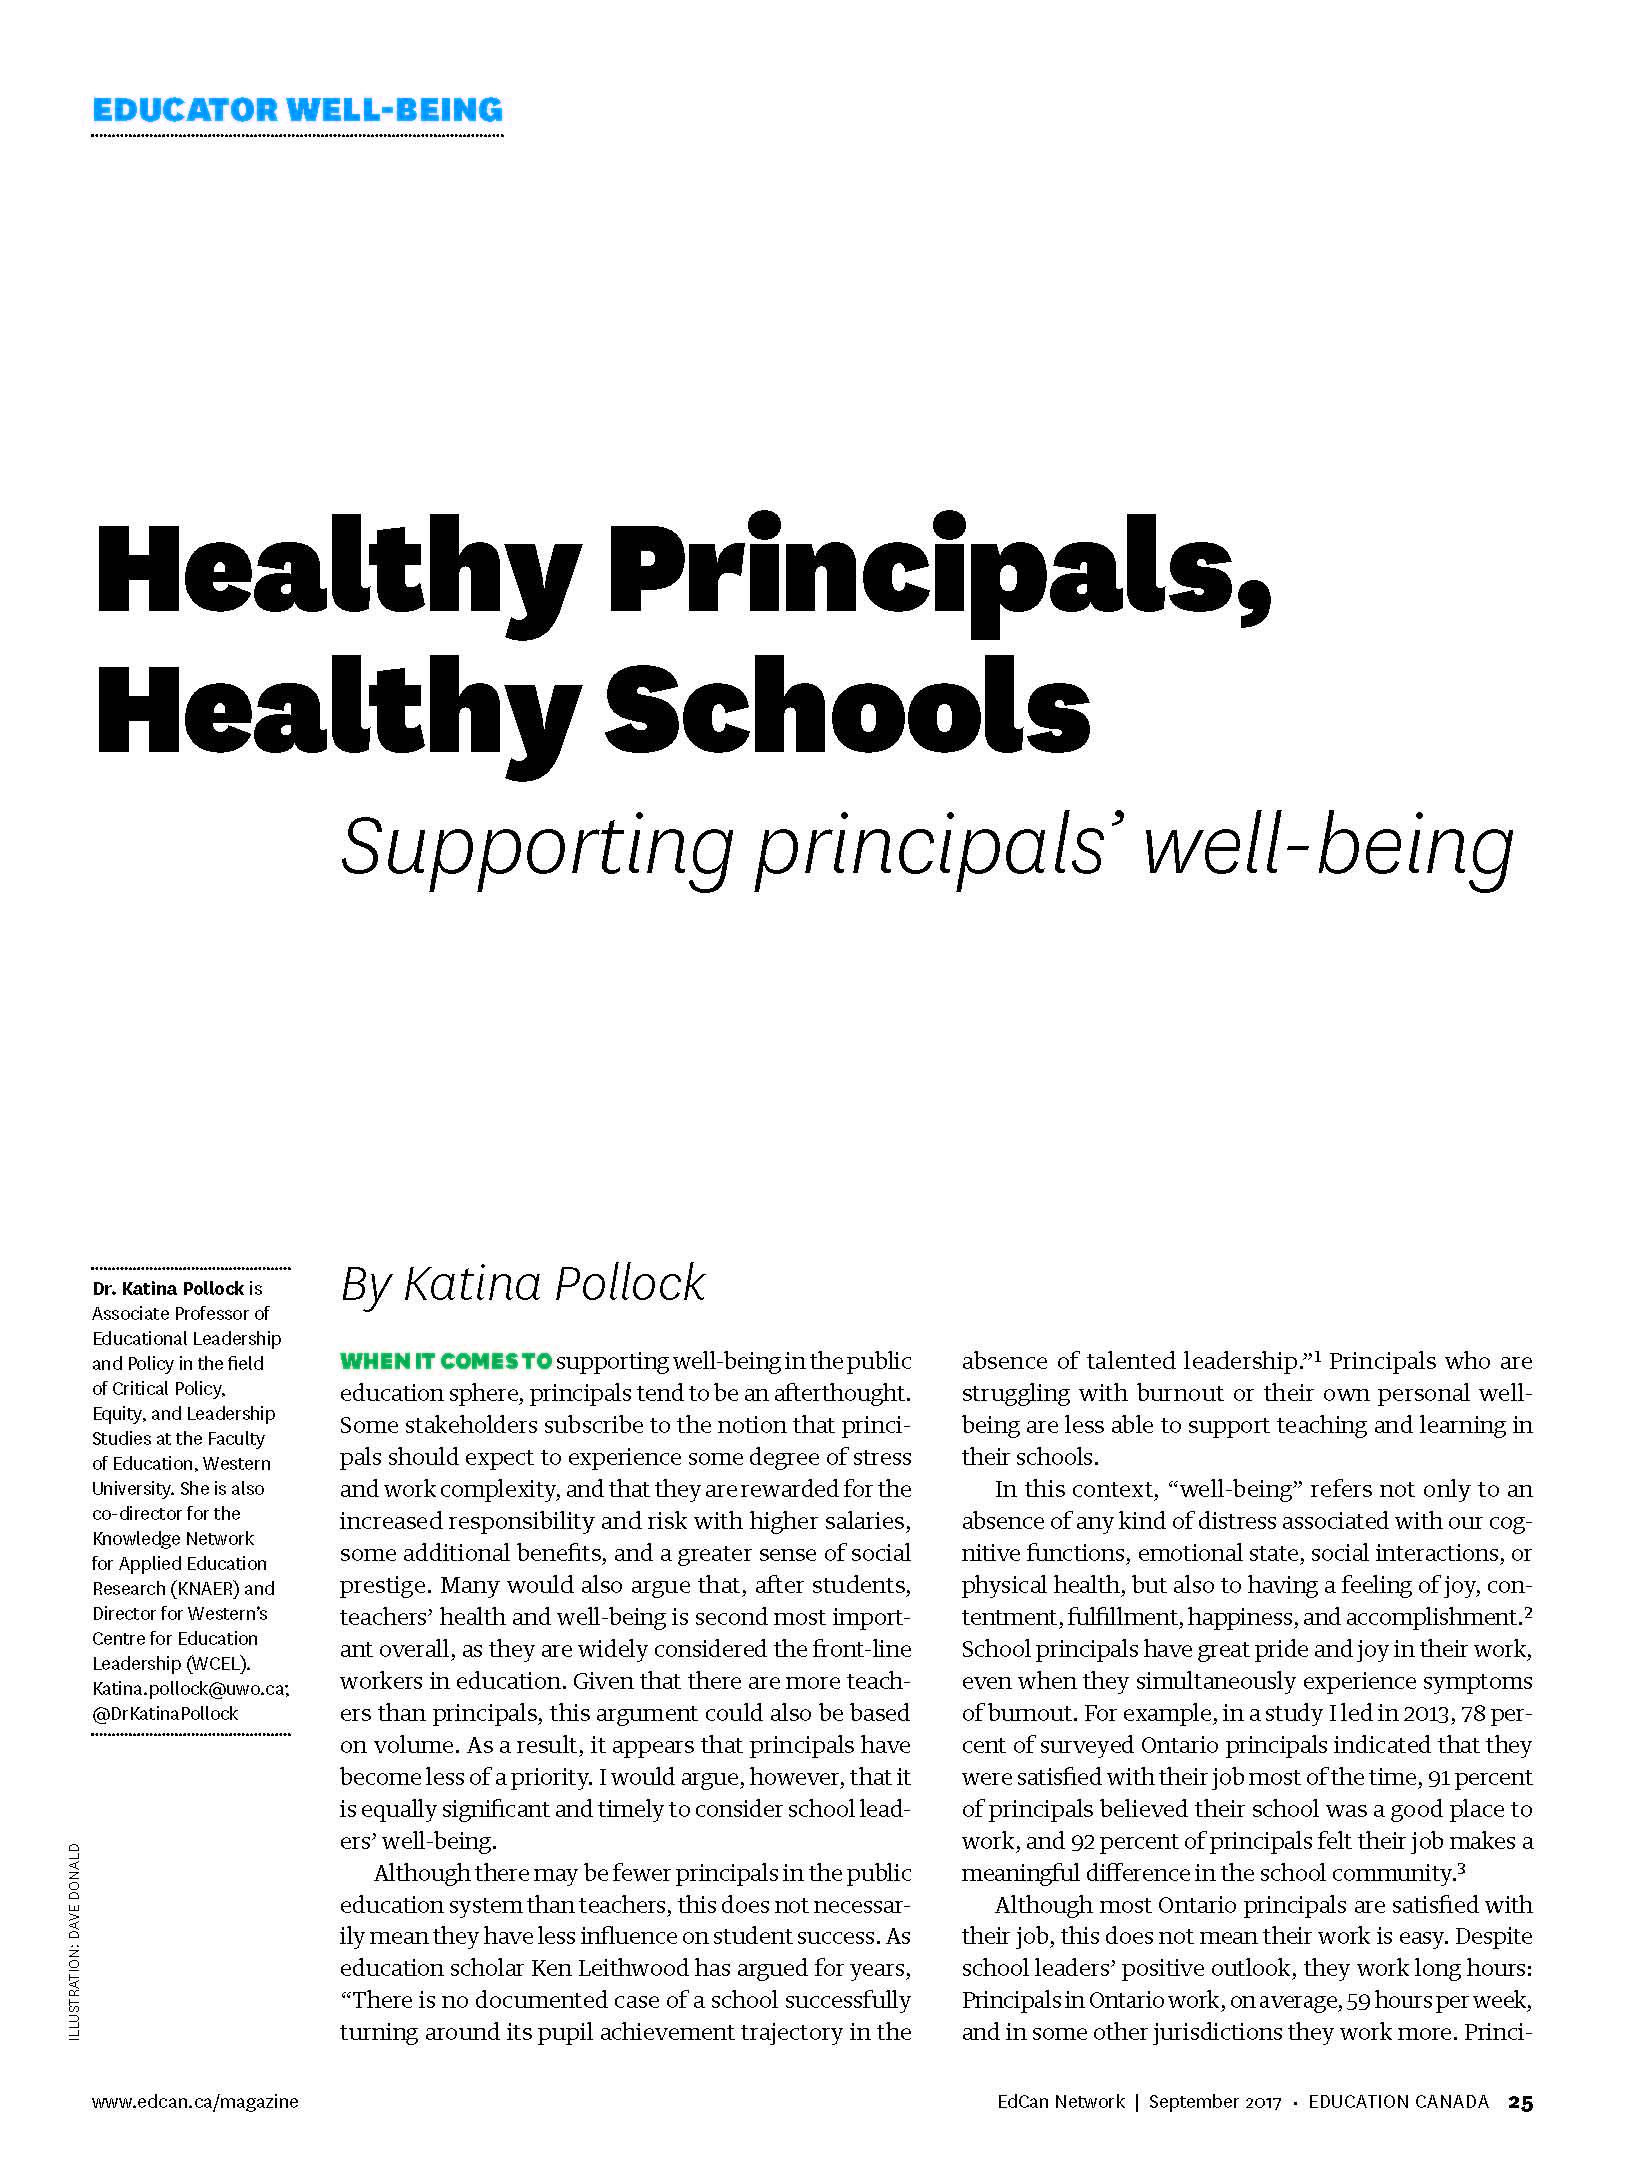   “Healthy Principals, Healthy Schools” by Dr. Katina Pollock.